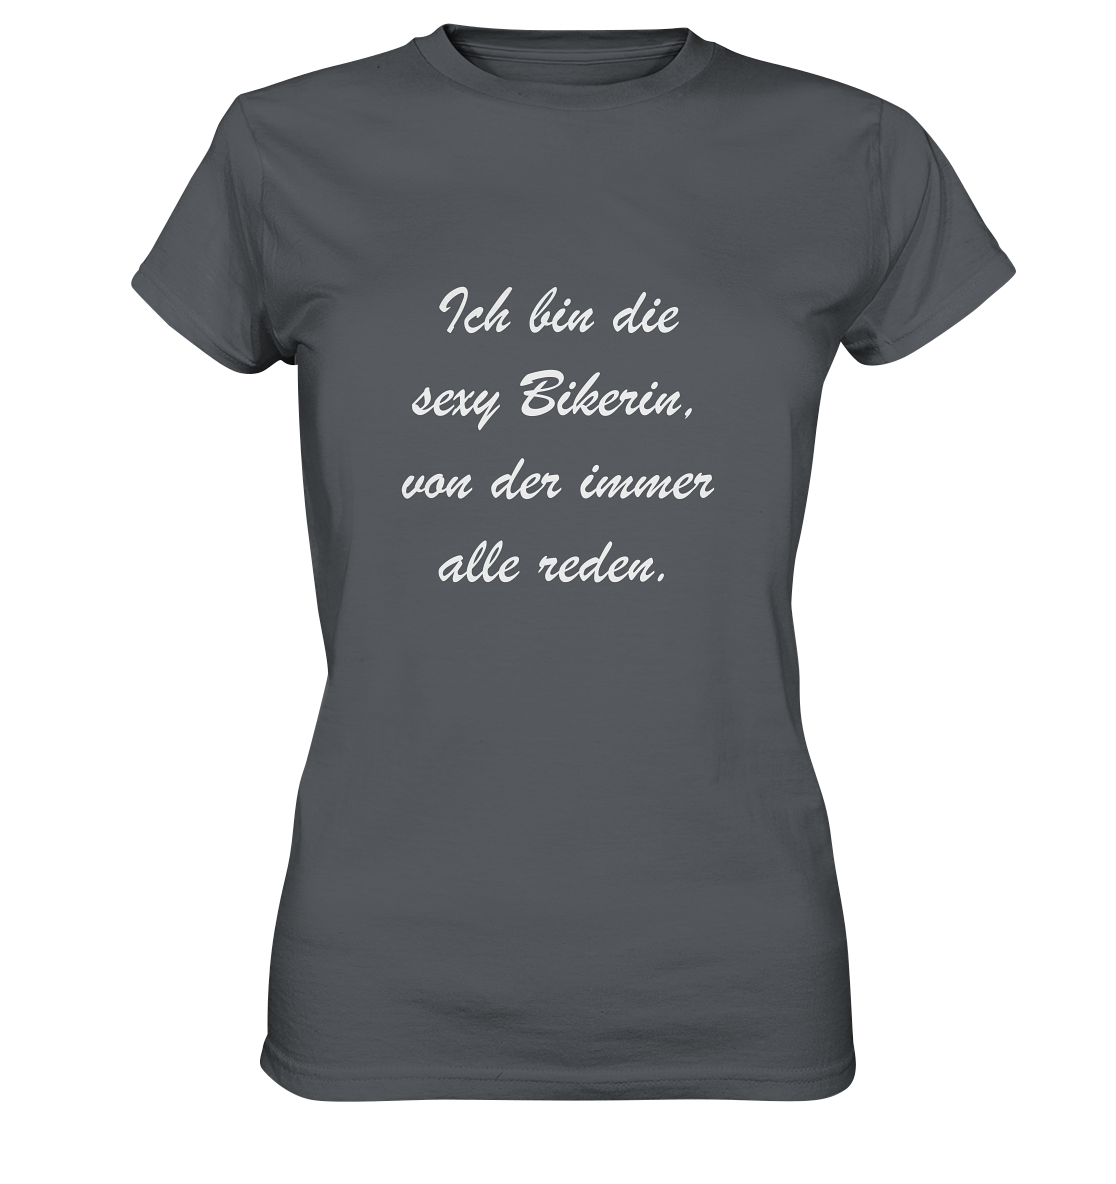 Damen-T-Shirt, Rundhals, mit weißem Spruch "Ich bin die sexy Bikerin, von der immer alle reden." grau